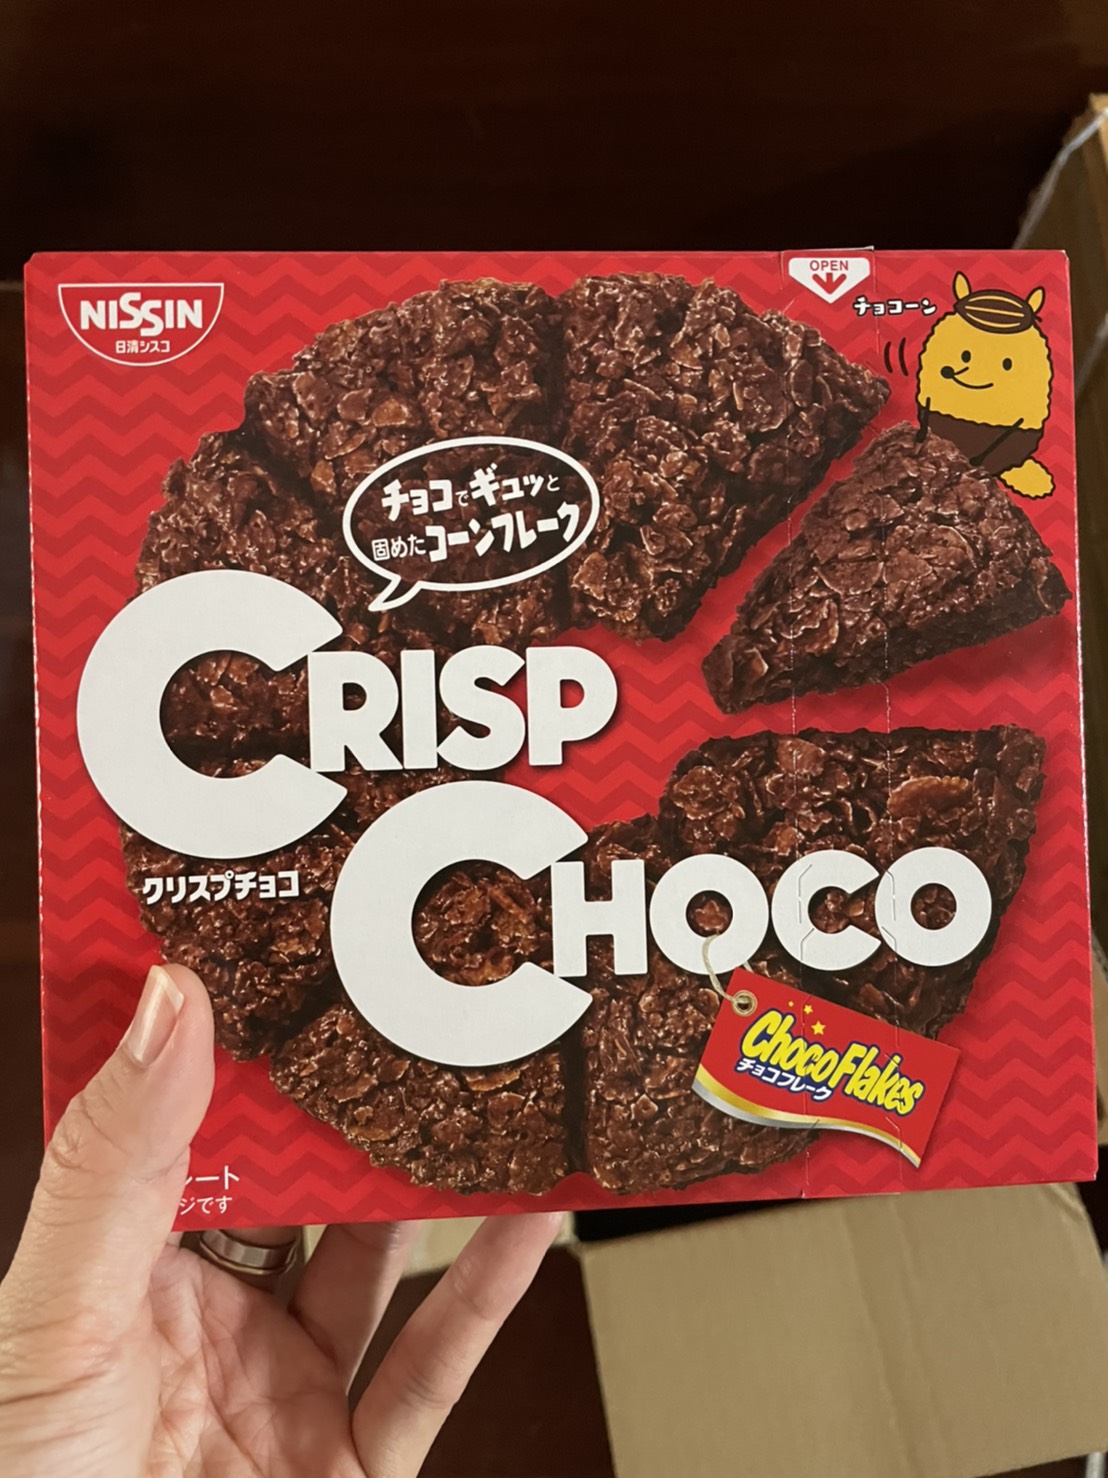 Crisp Choco พายช็อค ธัญพืชเคลือบช็อคโกแลต ขนมช็อคโกแลต หวาน หอม อร่อย เข้มข้น ธัญพืช มีประโยชน์ เด็กทานได้ Chocolate Flakes